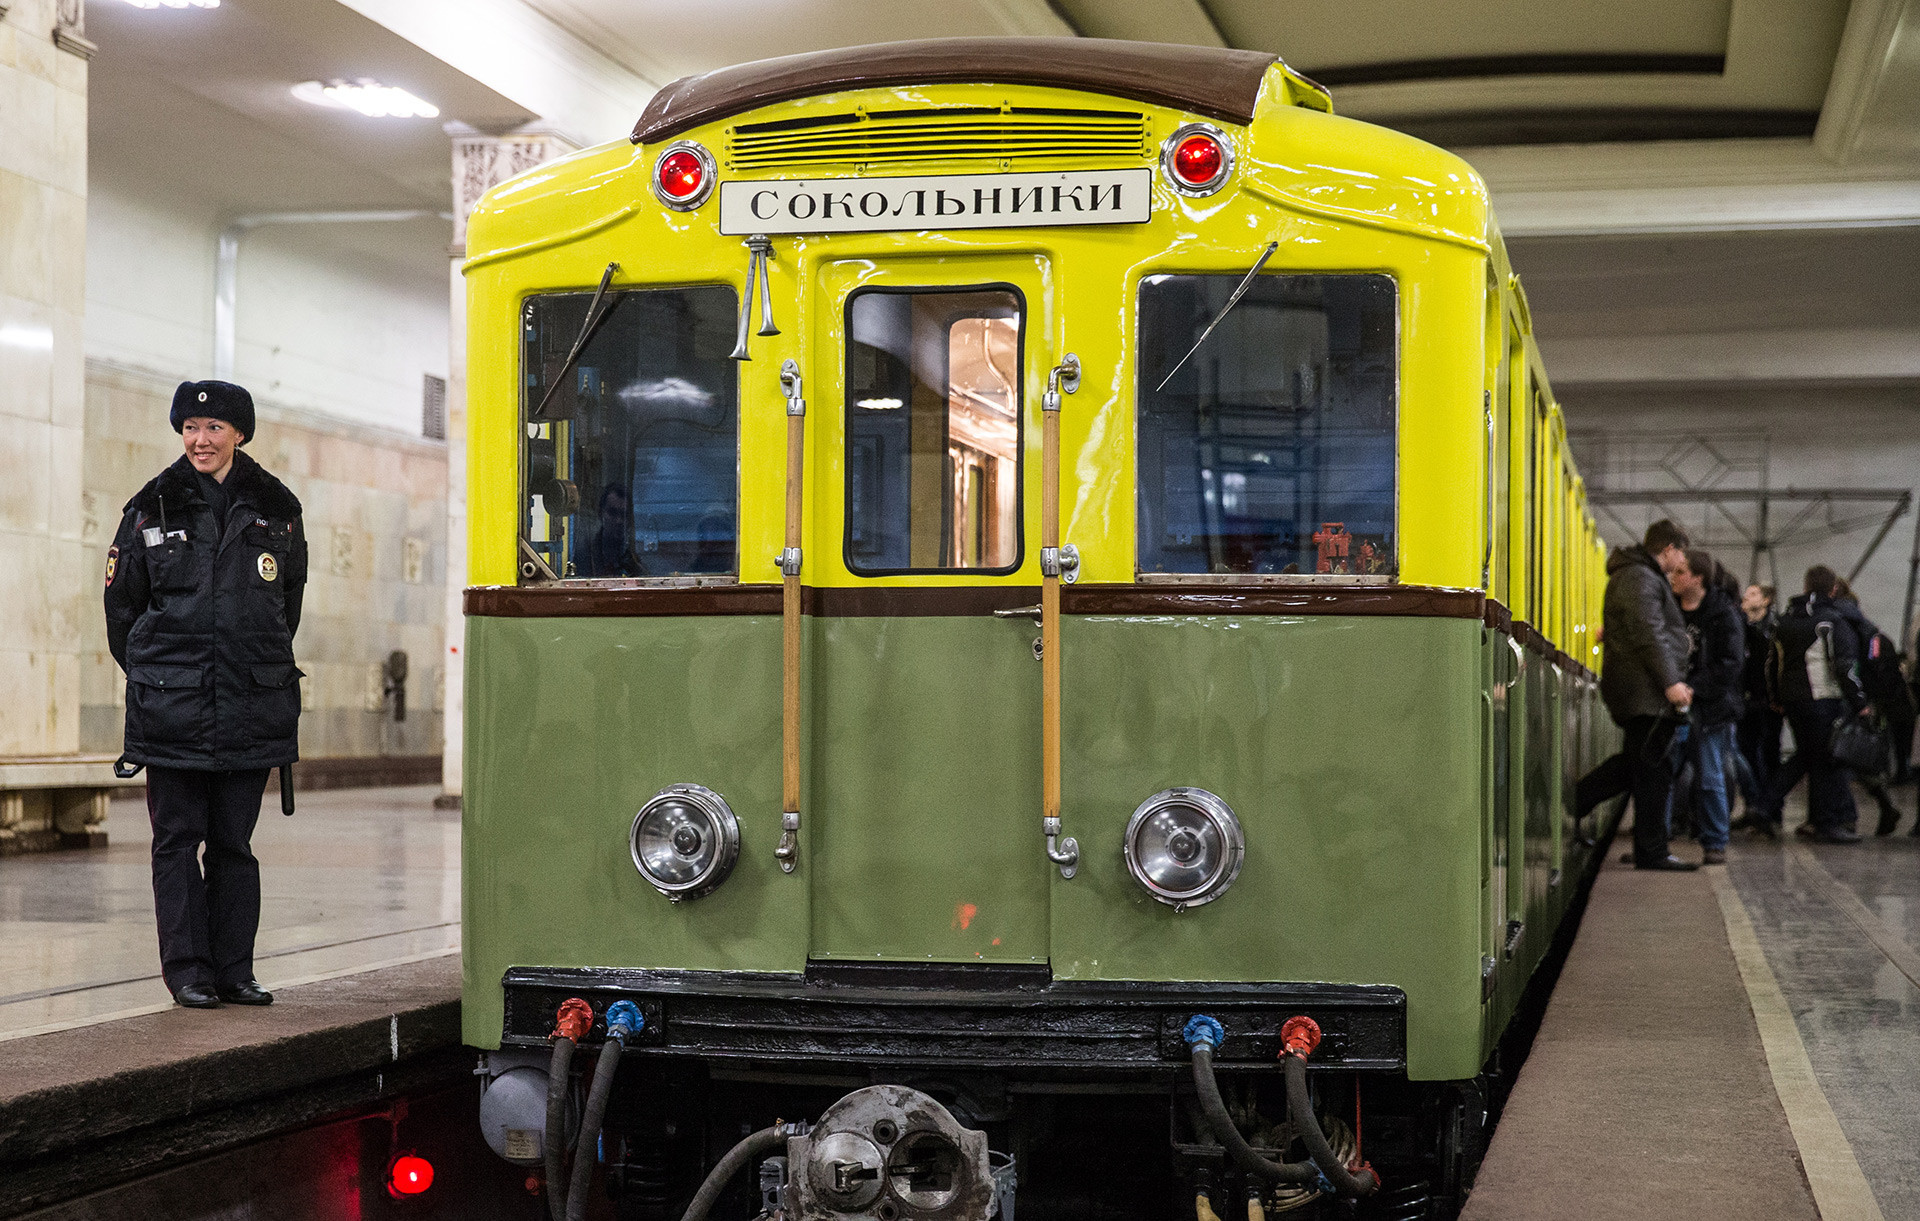 Beograd kupuje 50 ruskih tramvaja - Page 2 5ace06f915e9f941bf129797